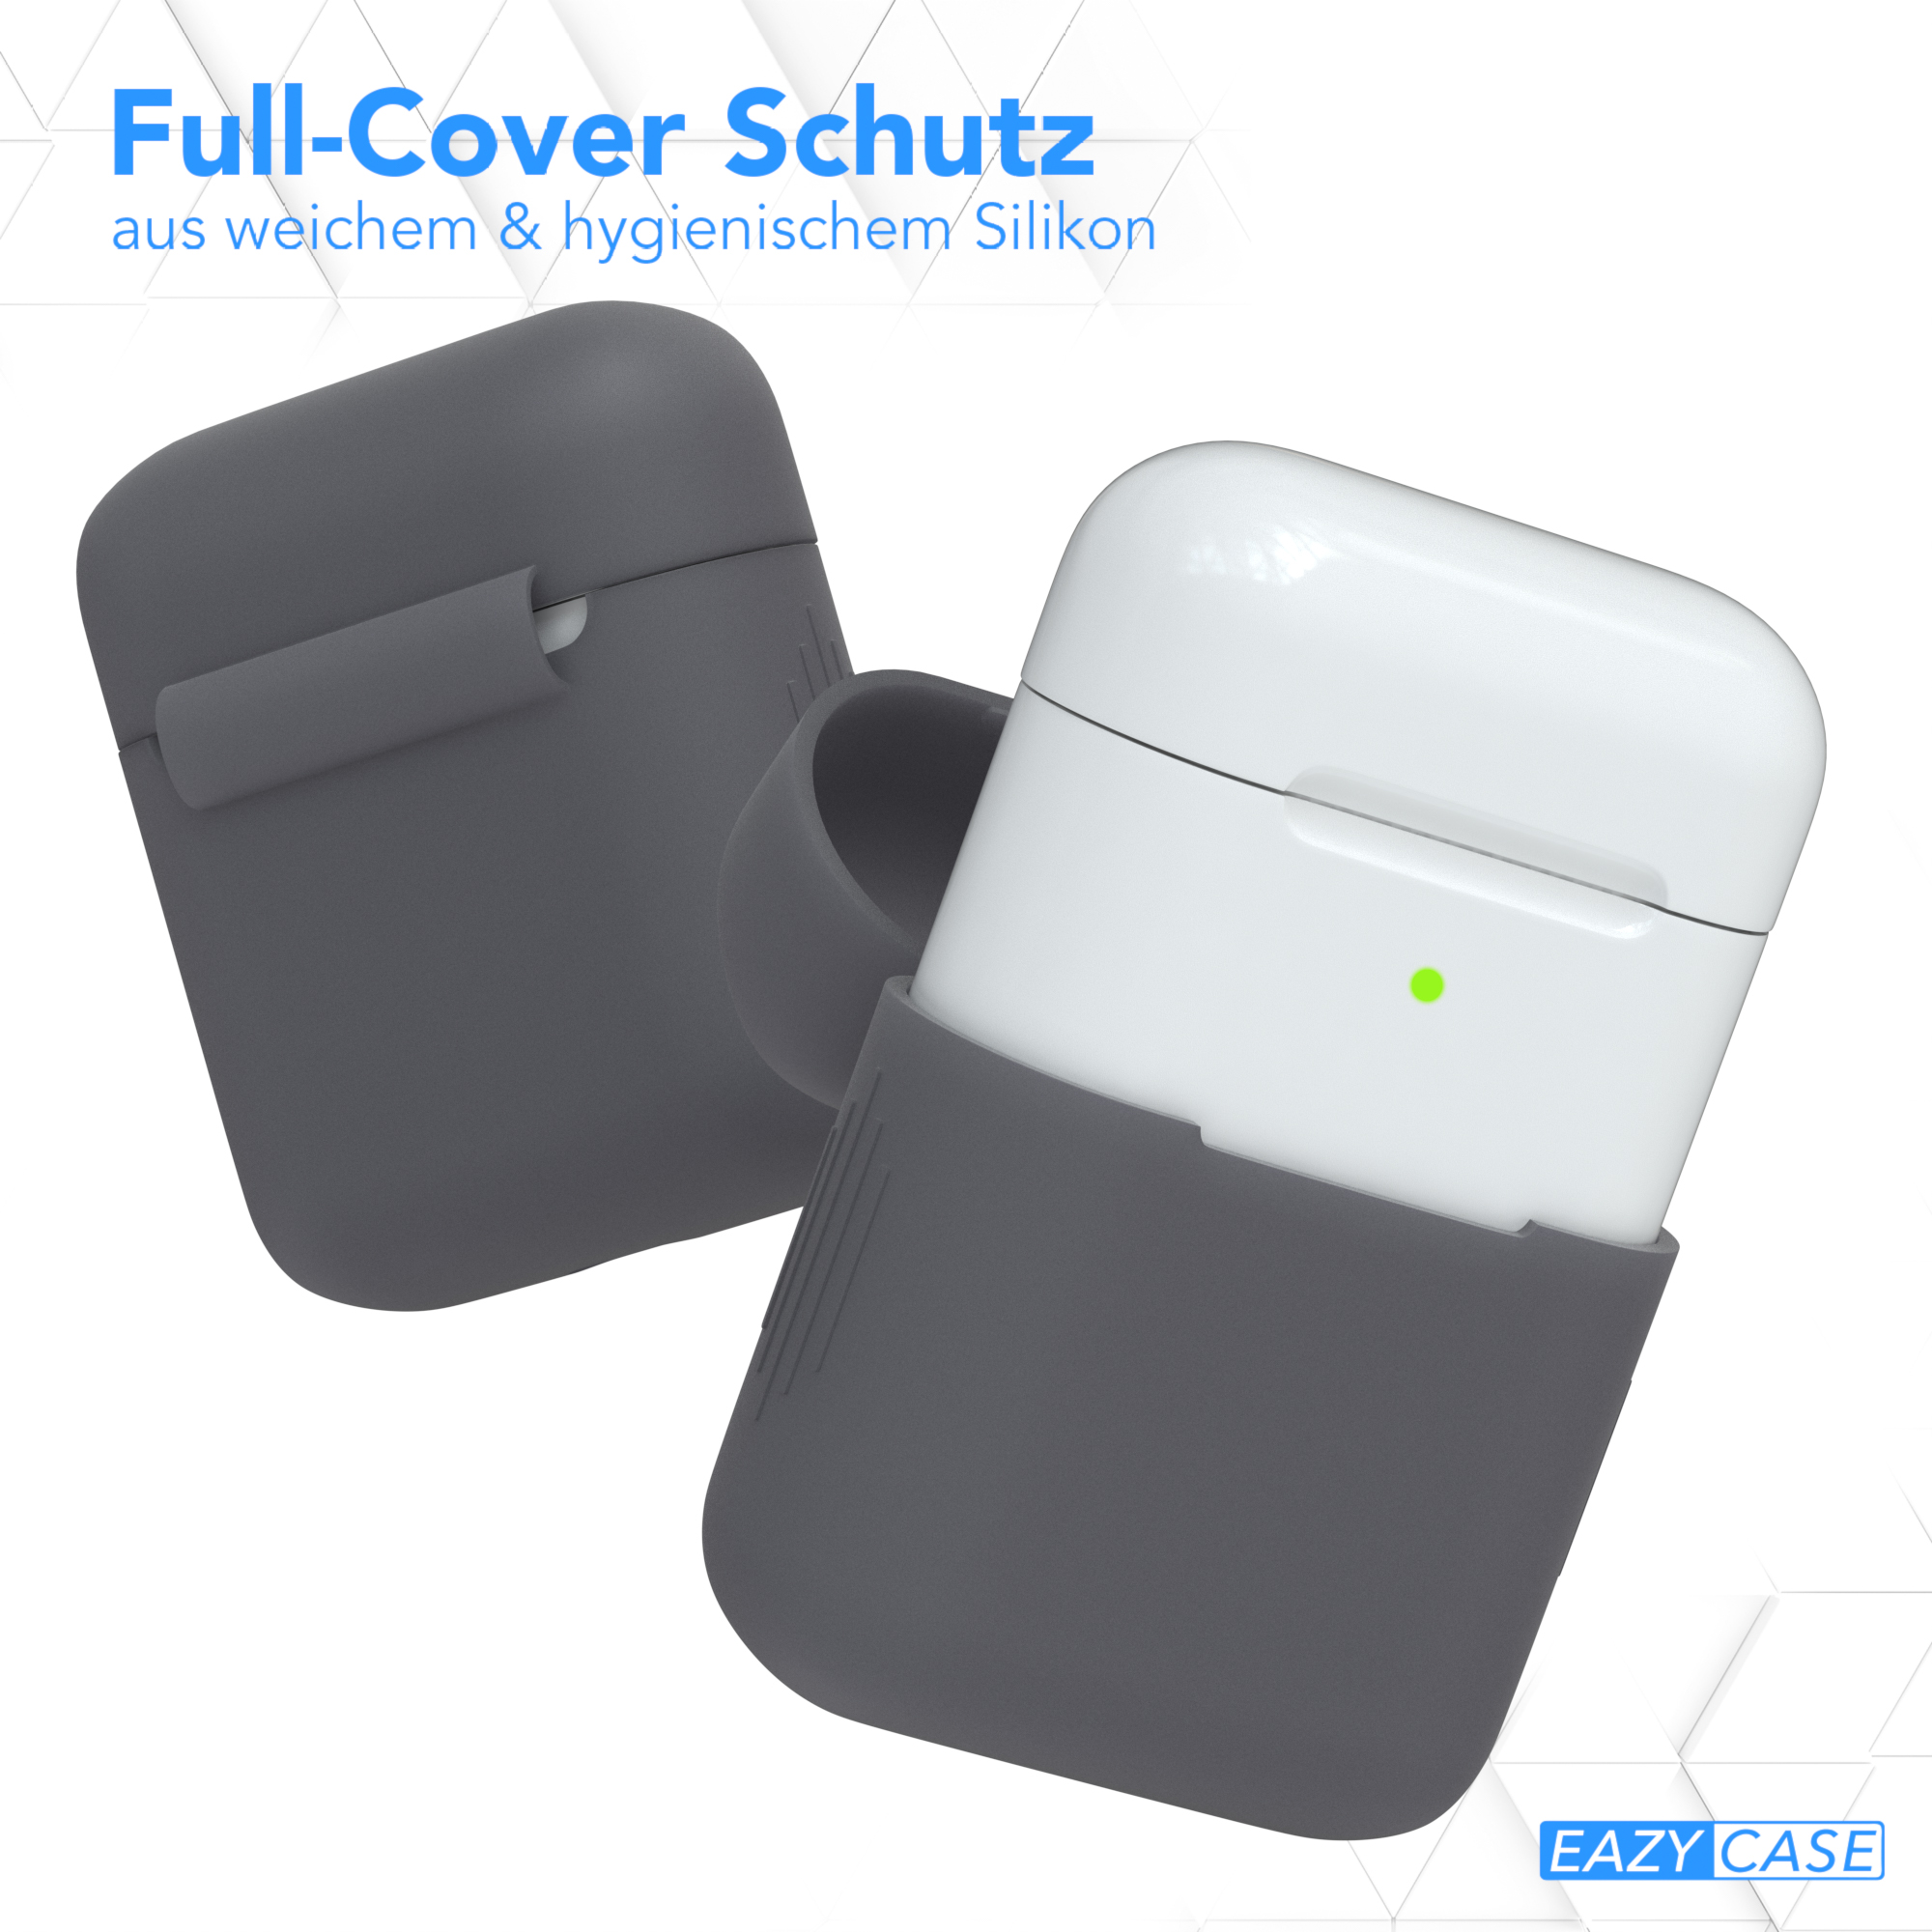 EAZY CASE AirPods Silikon Case Sleeve Anthrazit Grau passend für: Schutzhülle Apple